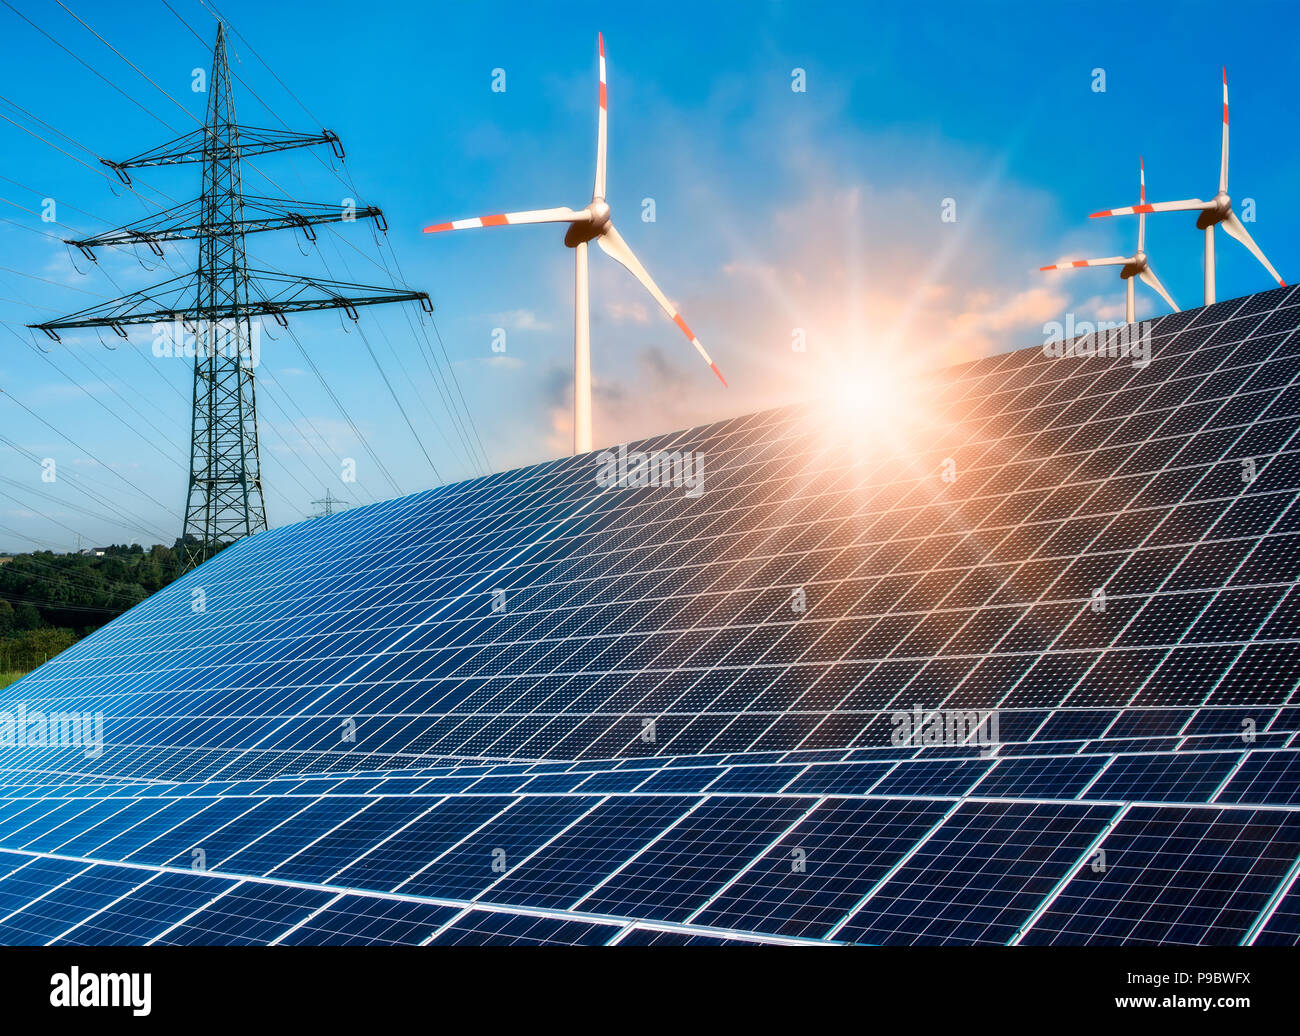 Système photovoltaïque, éolienne et pylône électrique avec soleil clair Banque D'Images